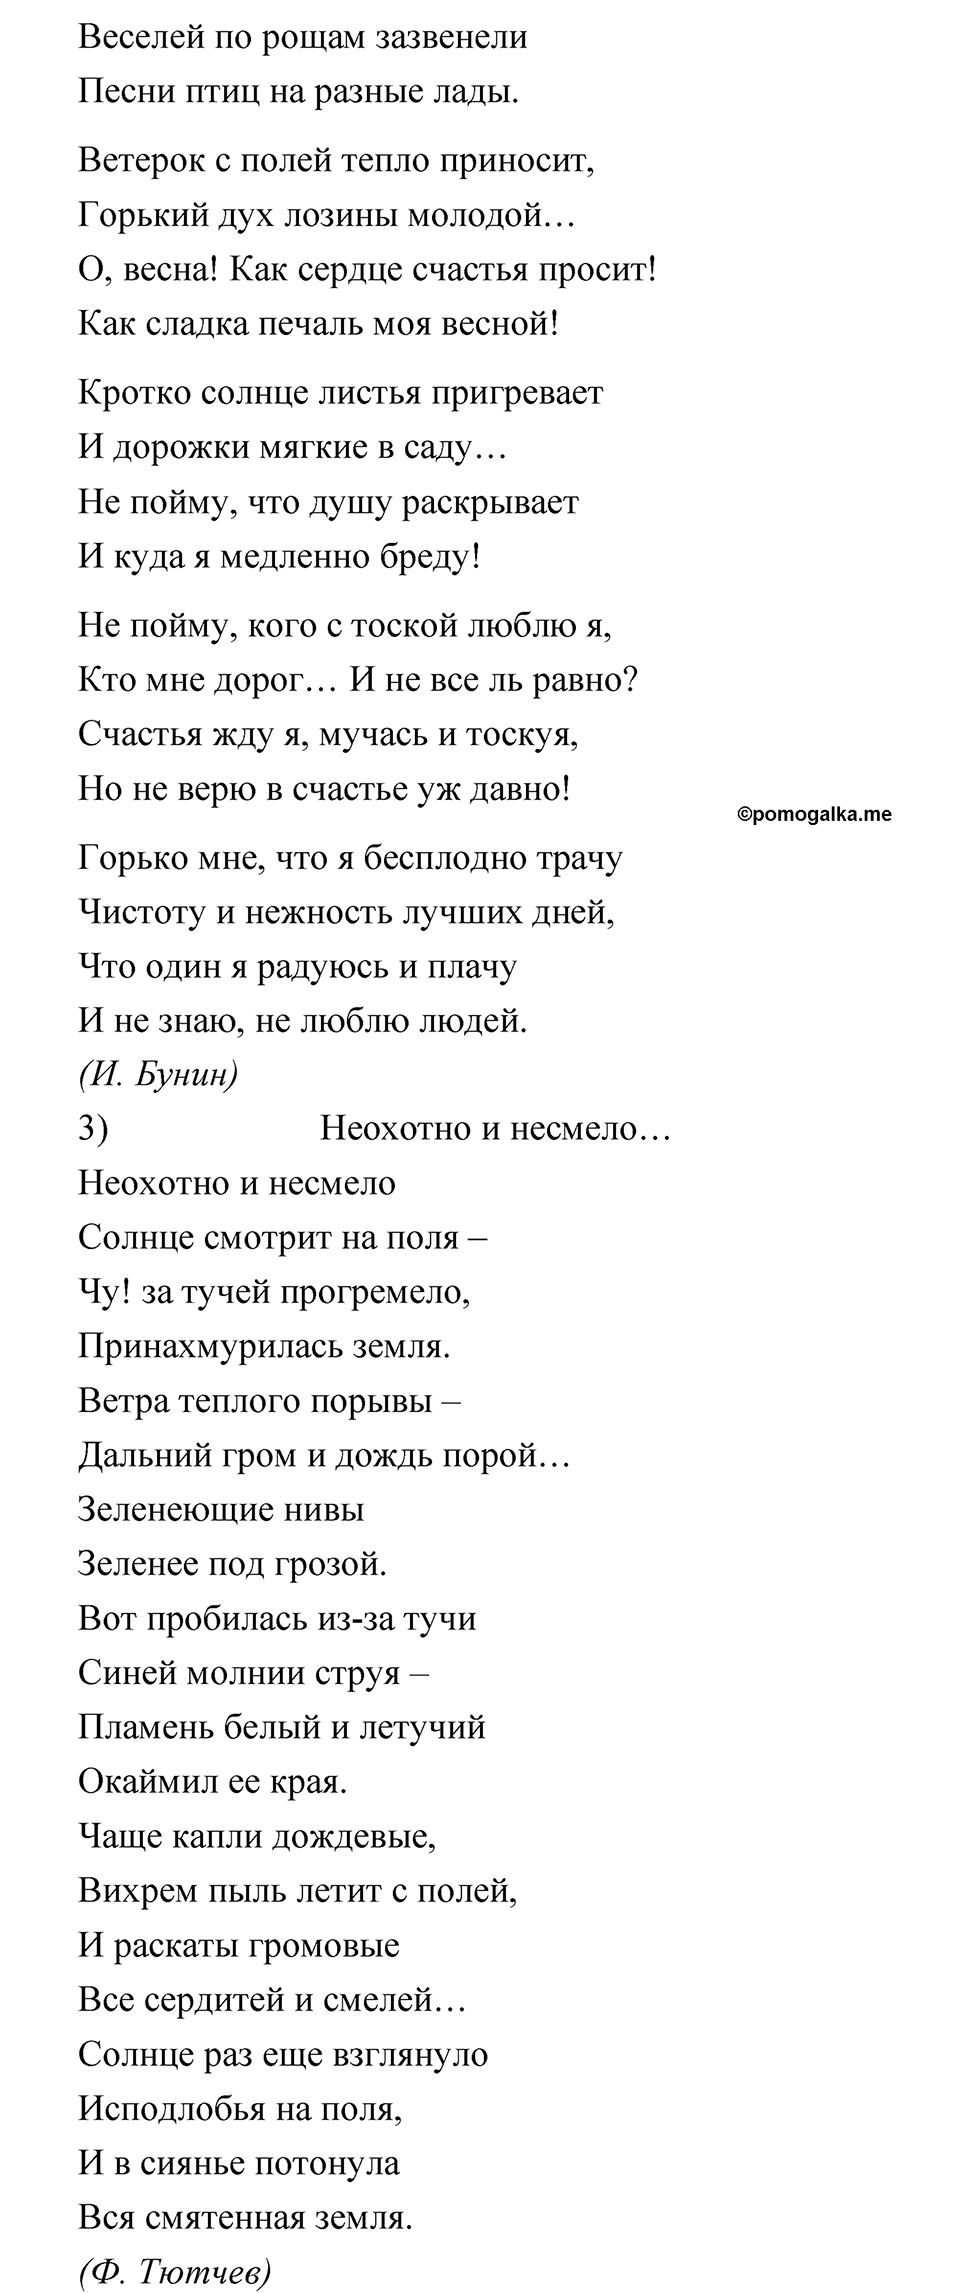 страница 108 упражнение 132 русский язык 5 класс Быстрова, Кибирева 1 часть 2021 год